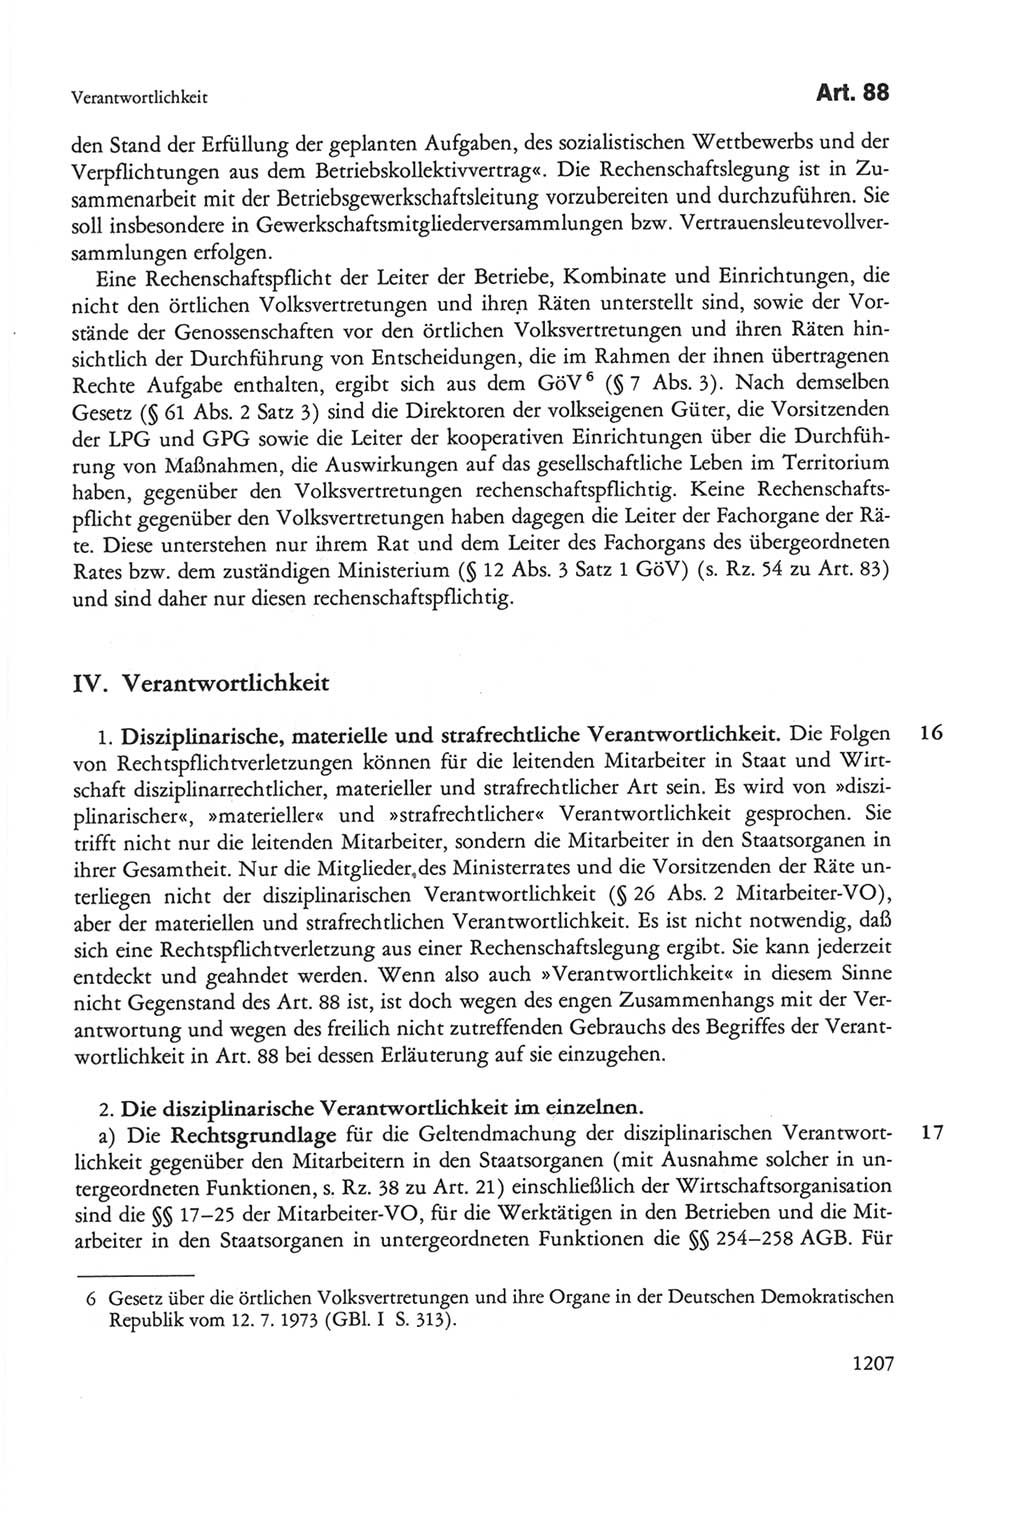 Die sozialistische Verfassung der Deutschen Demokratischen Republik (DDR), Kommentar 1982, Seite 1207 (Soz. Verf. DDR Komm. 1982, S. 1207)